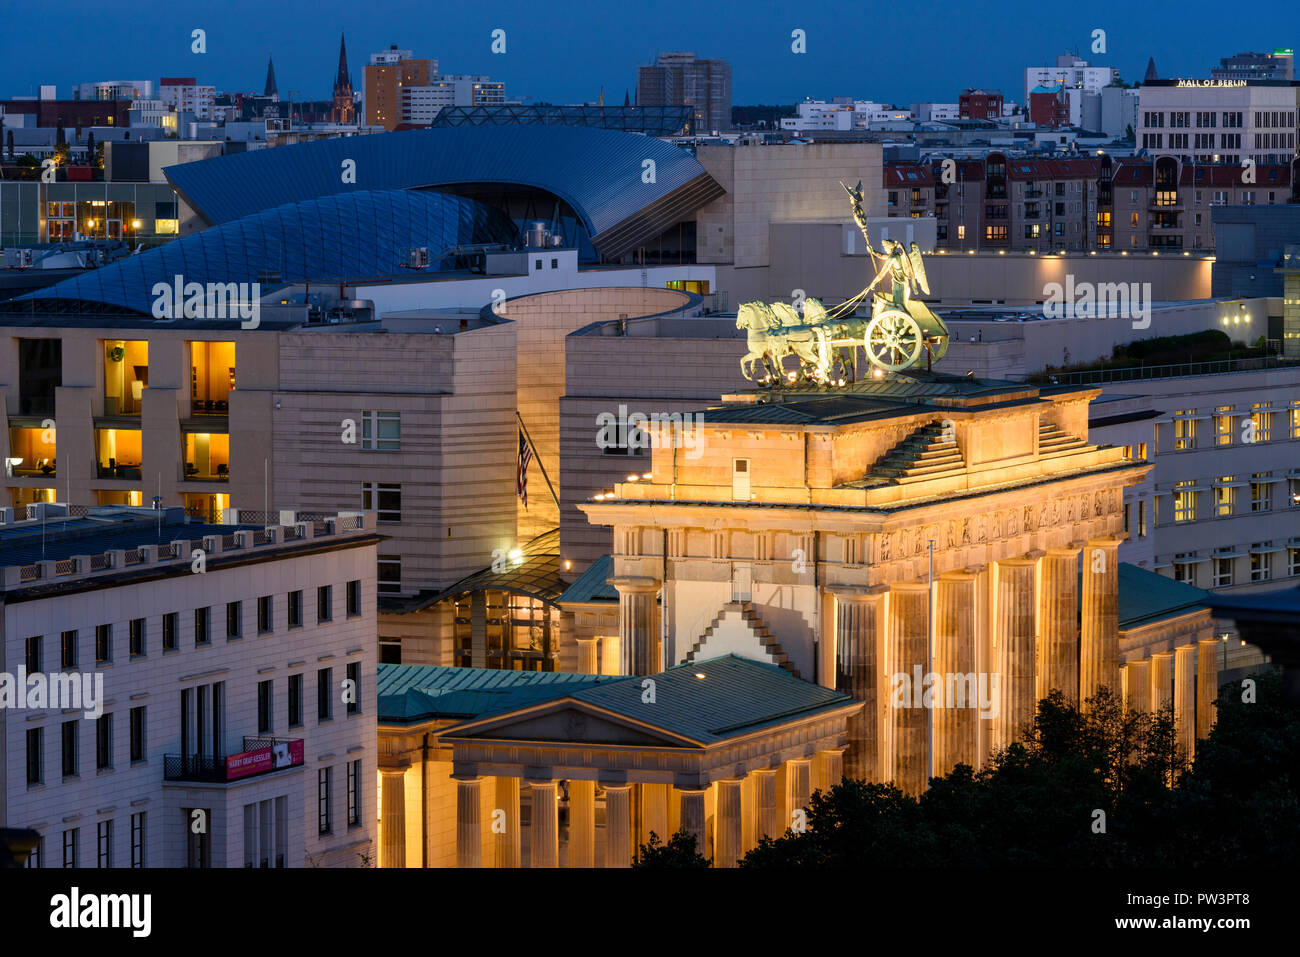 Berlín. Alemania. Berlin skyline elevadas con vistas a la Puerta de Brandenburgo (Brandenburger Tor) iluminado en la noche, y los edificios de Pariser Platz. Foto de stock